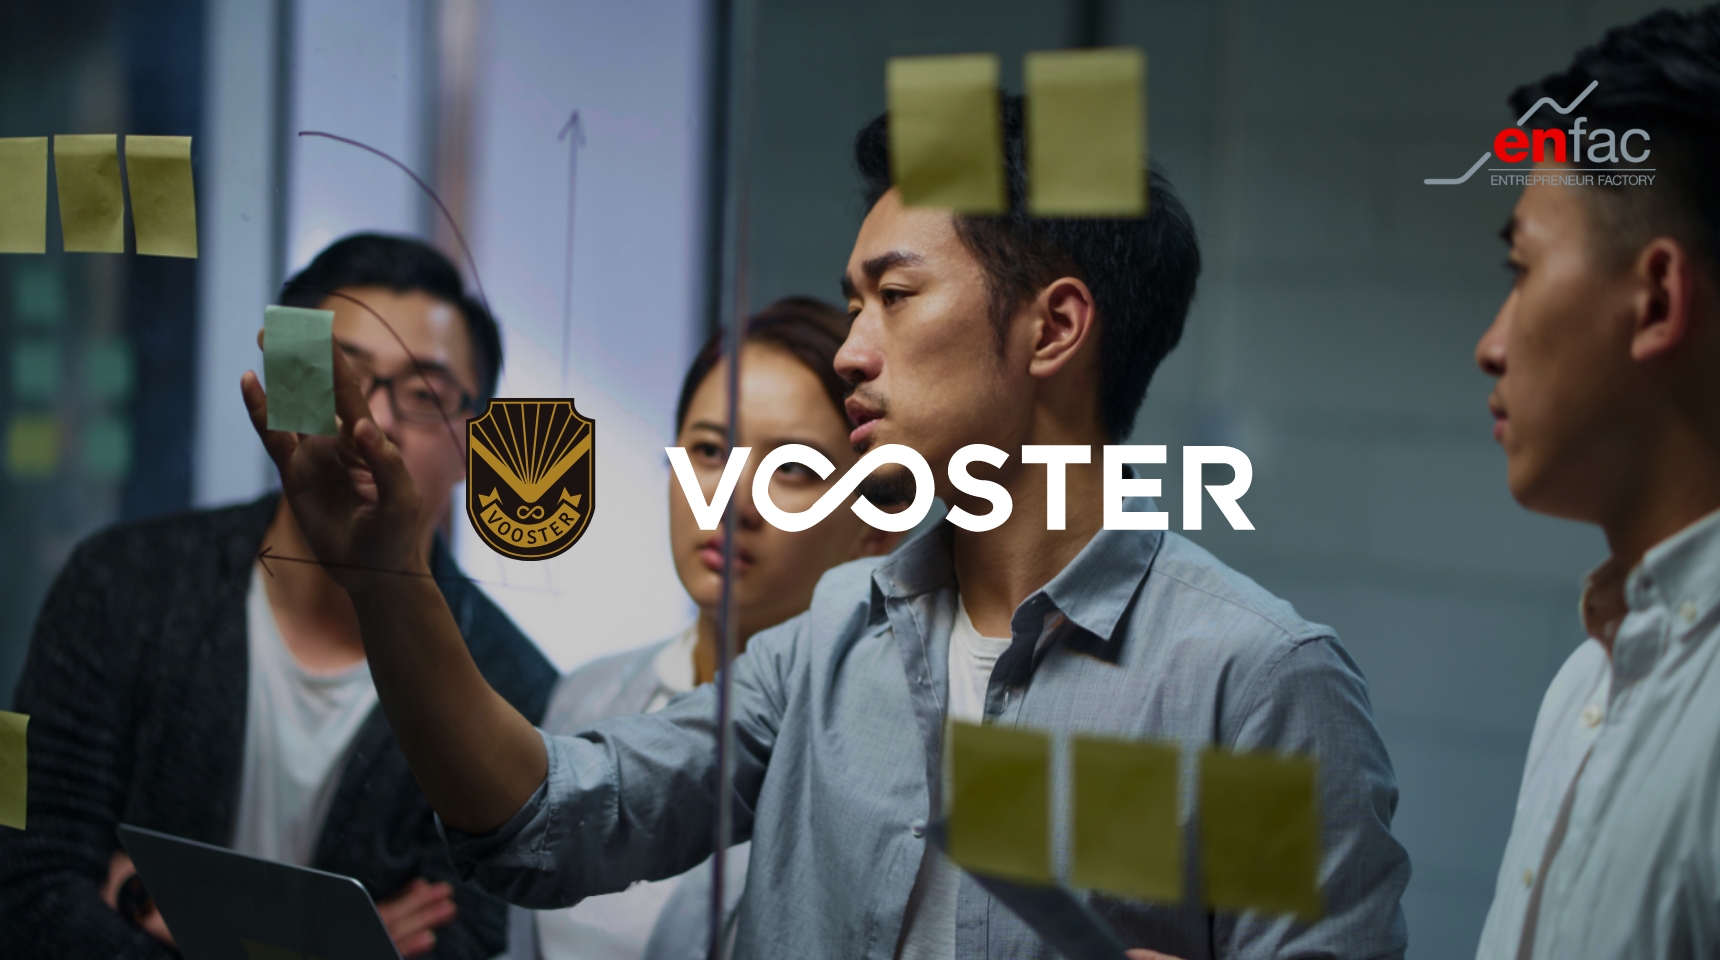 enfac 見放題サービス「Vooster」にビズクリクラウドがついたプランが登場！